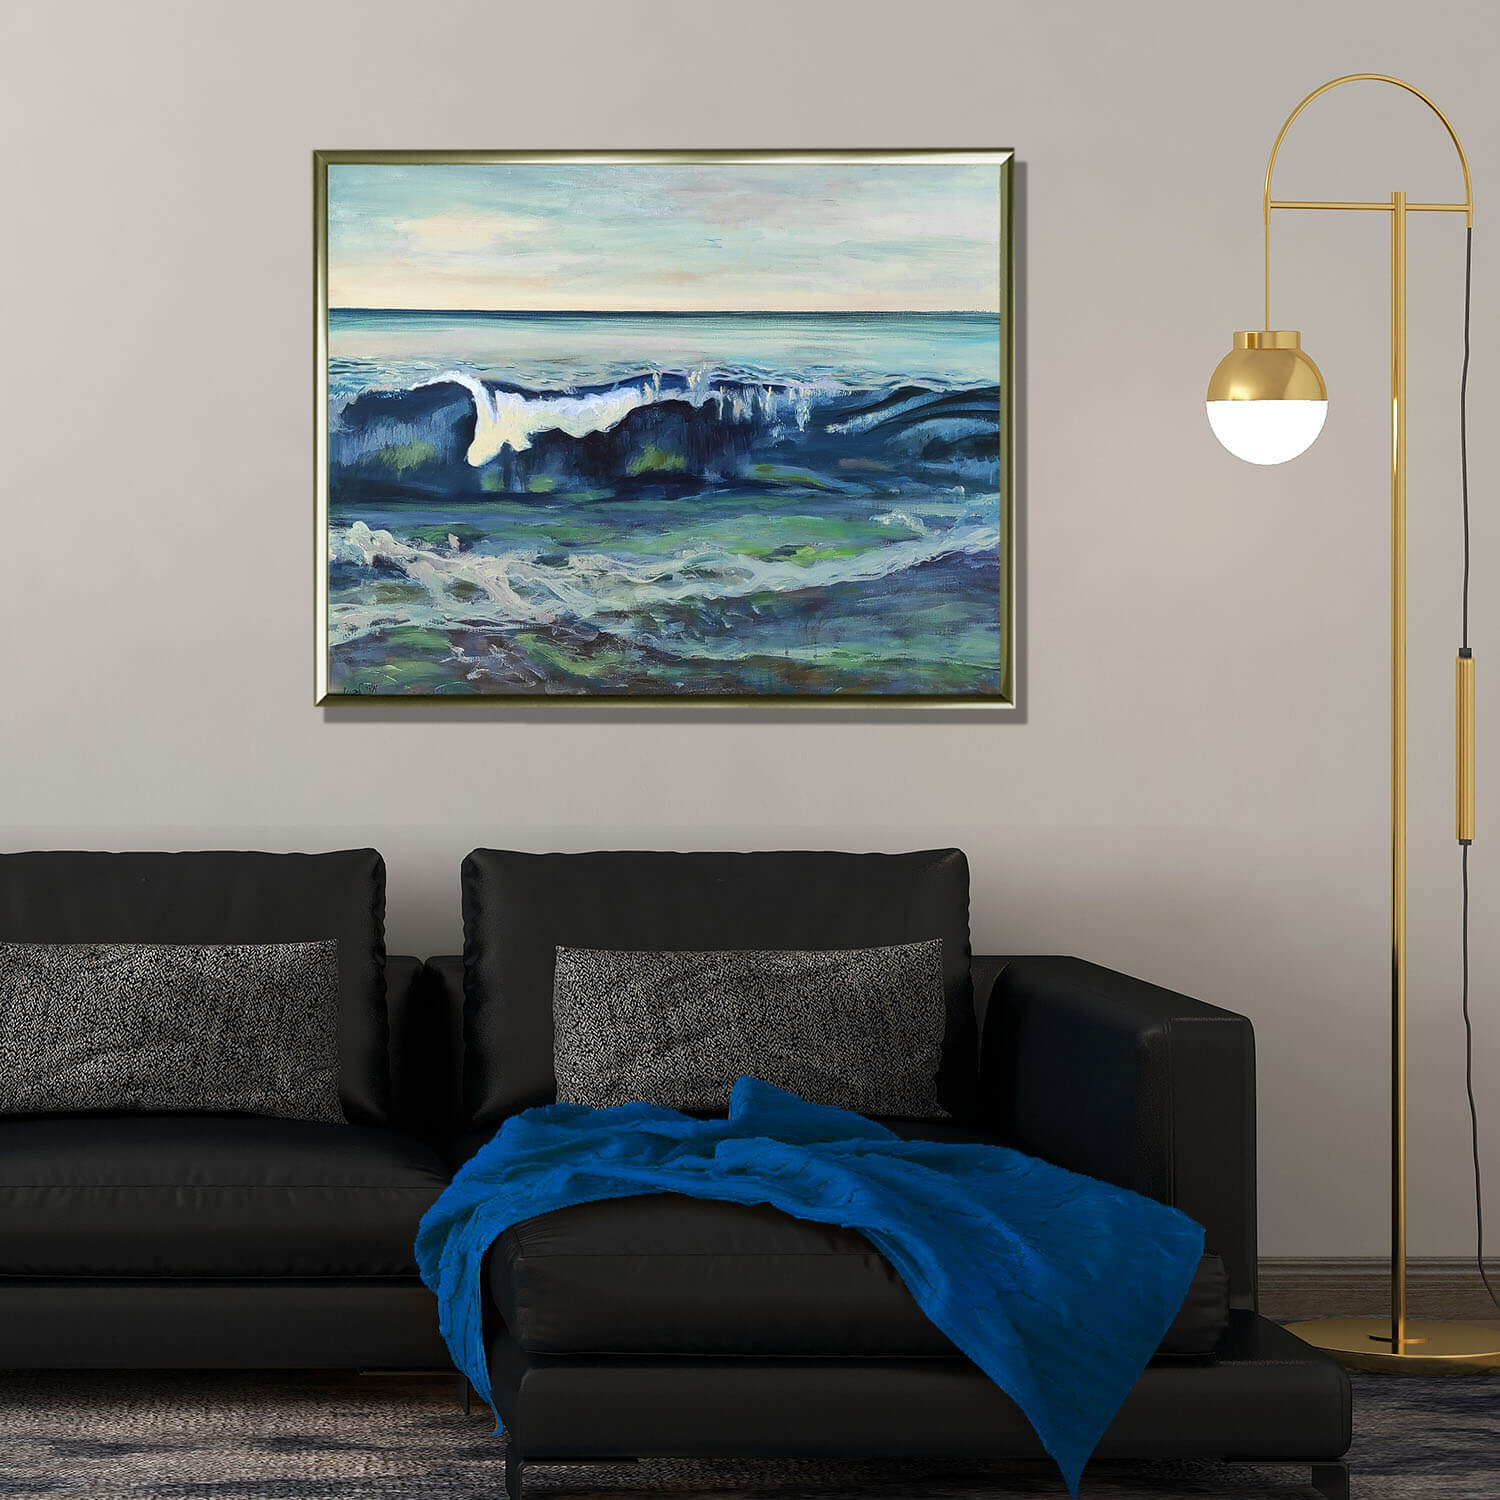 ציור ים וגלים ציור מעל ספה שחורה תמונה לסלון בצבעים כחול וירוק ציירת מירי לביא